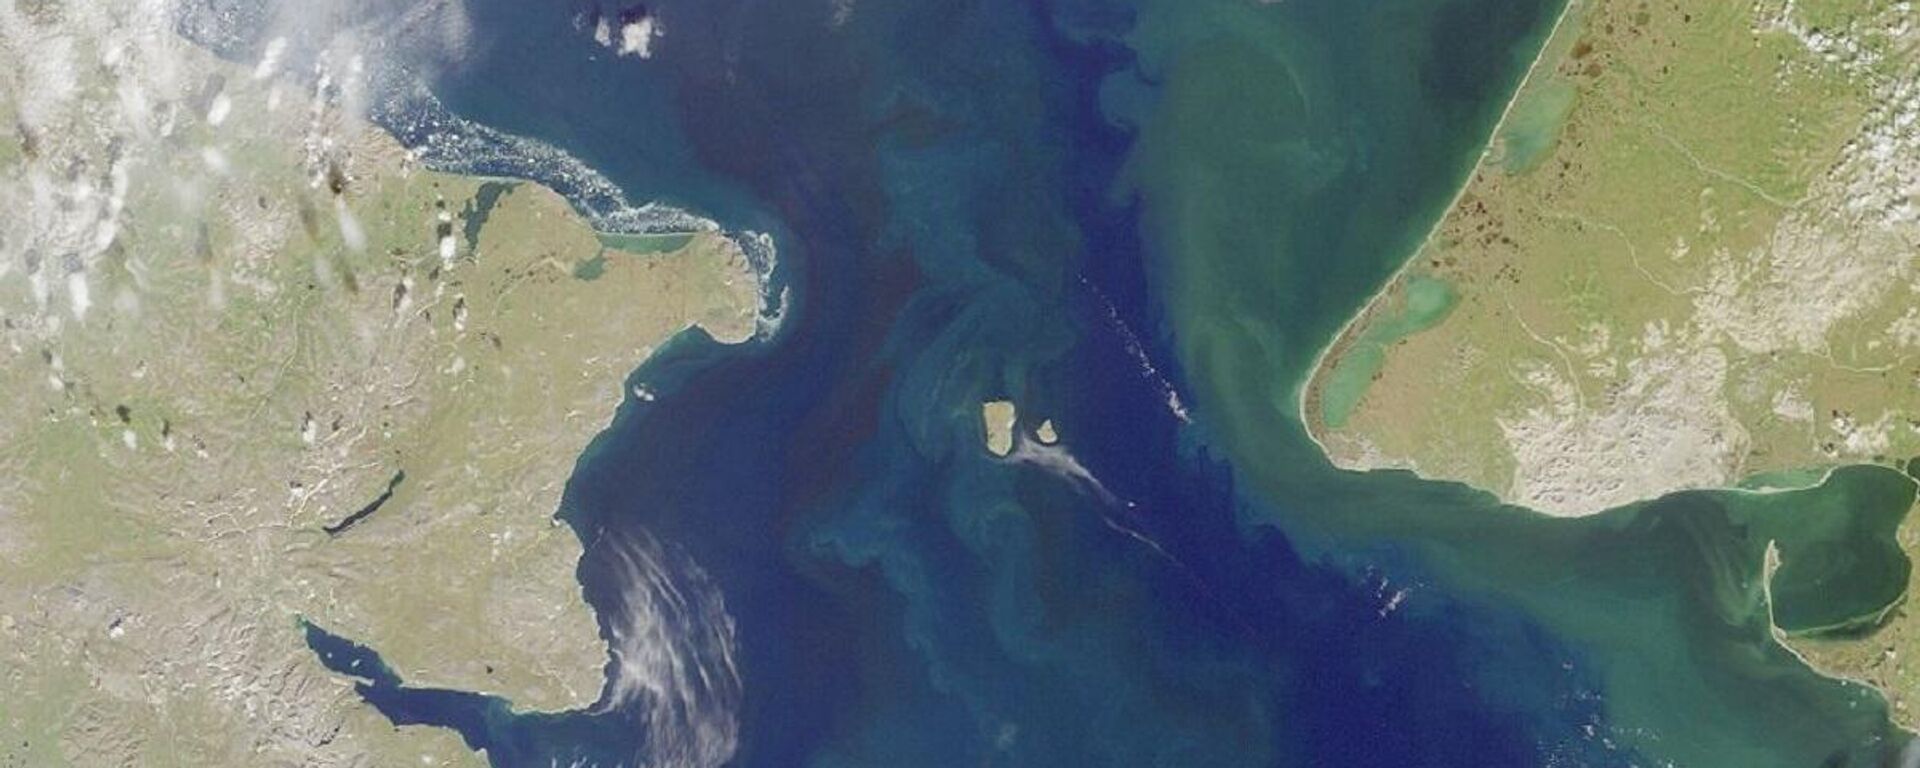 El estrecho de Bering que separa Siberia de Alaska en el Pacífico Norte - Sputnik Mundo, 1920, 03.05.2021